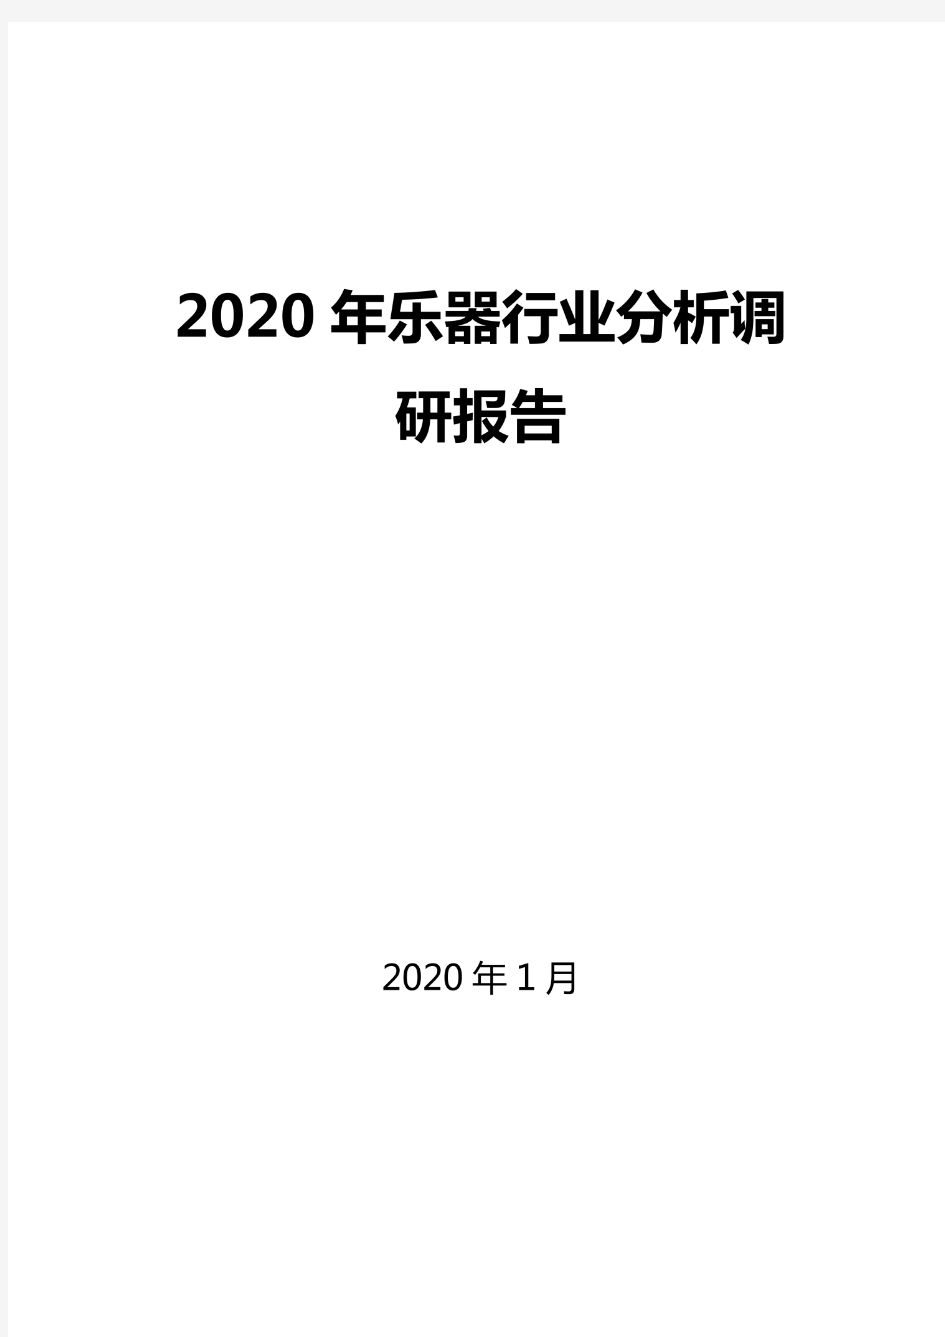 2020乐器行业分析调研报告